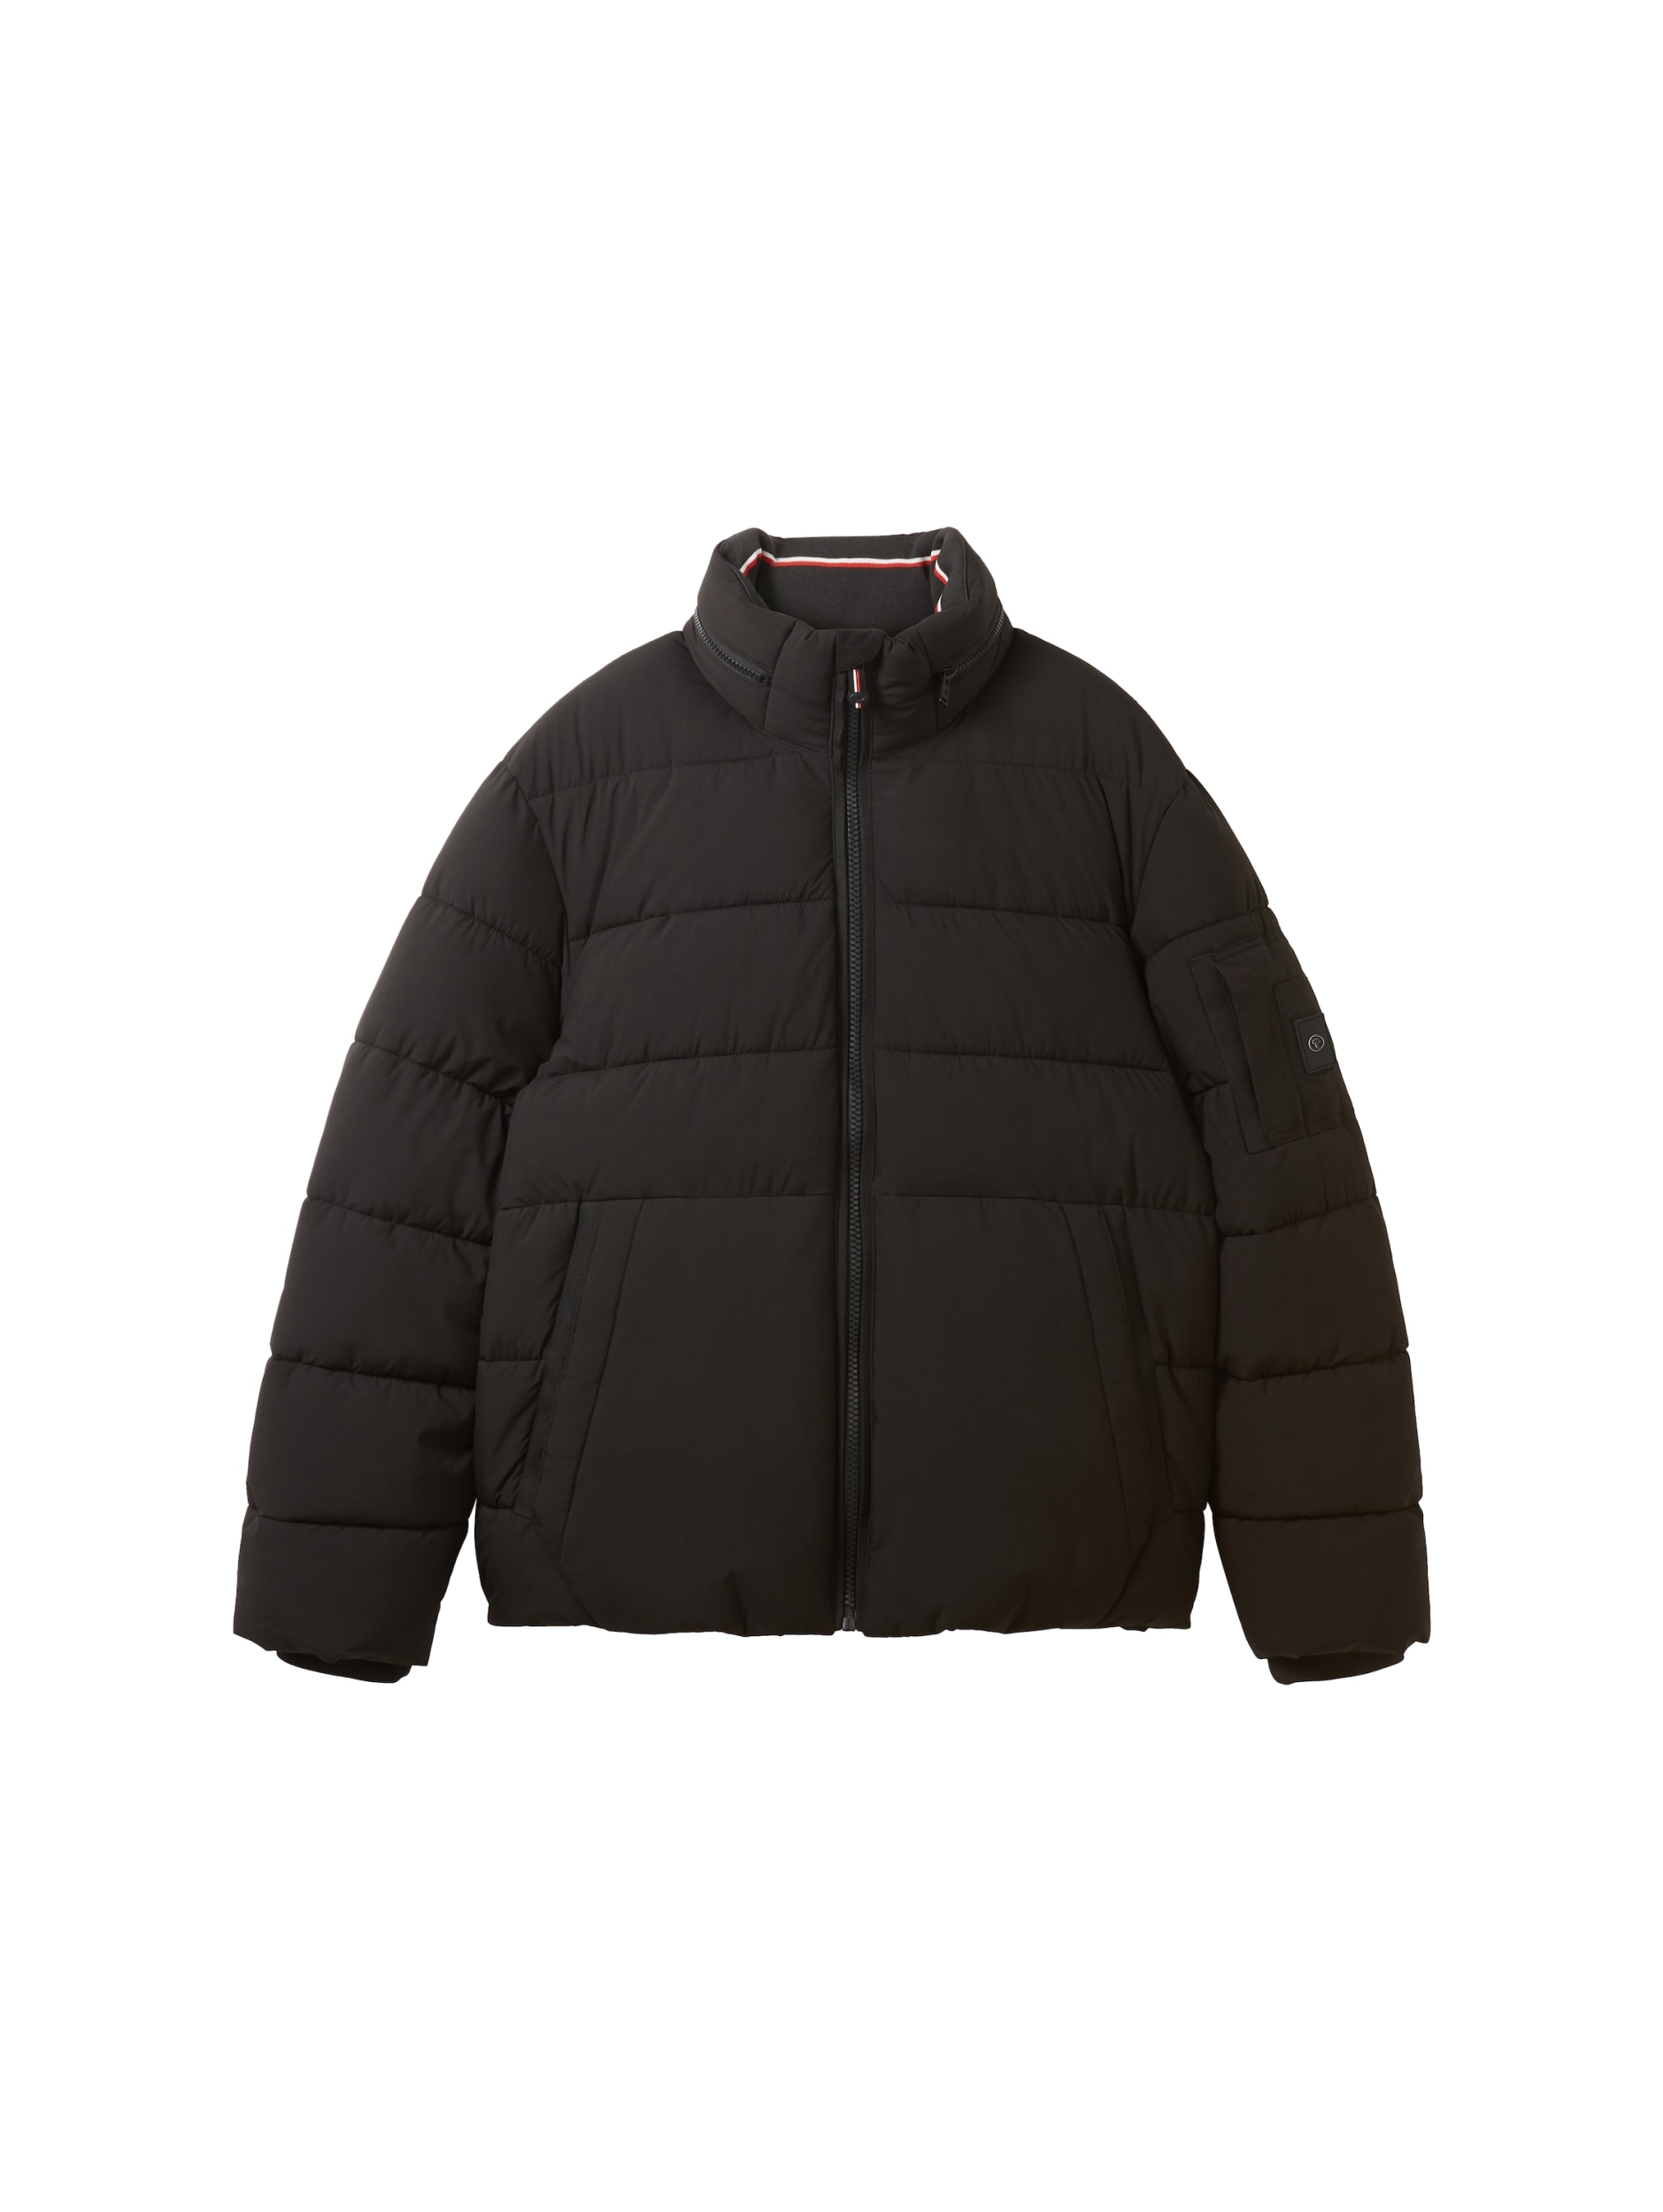 puffer jacket | L black 1037336-29999_Black-L | 